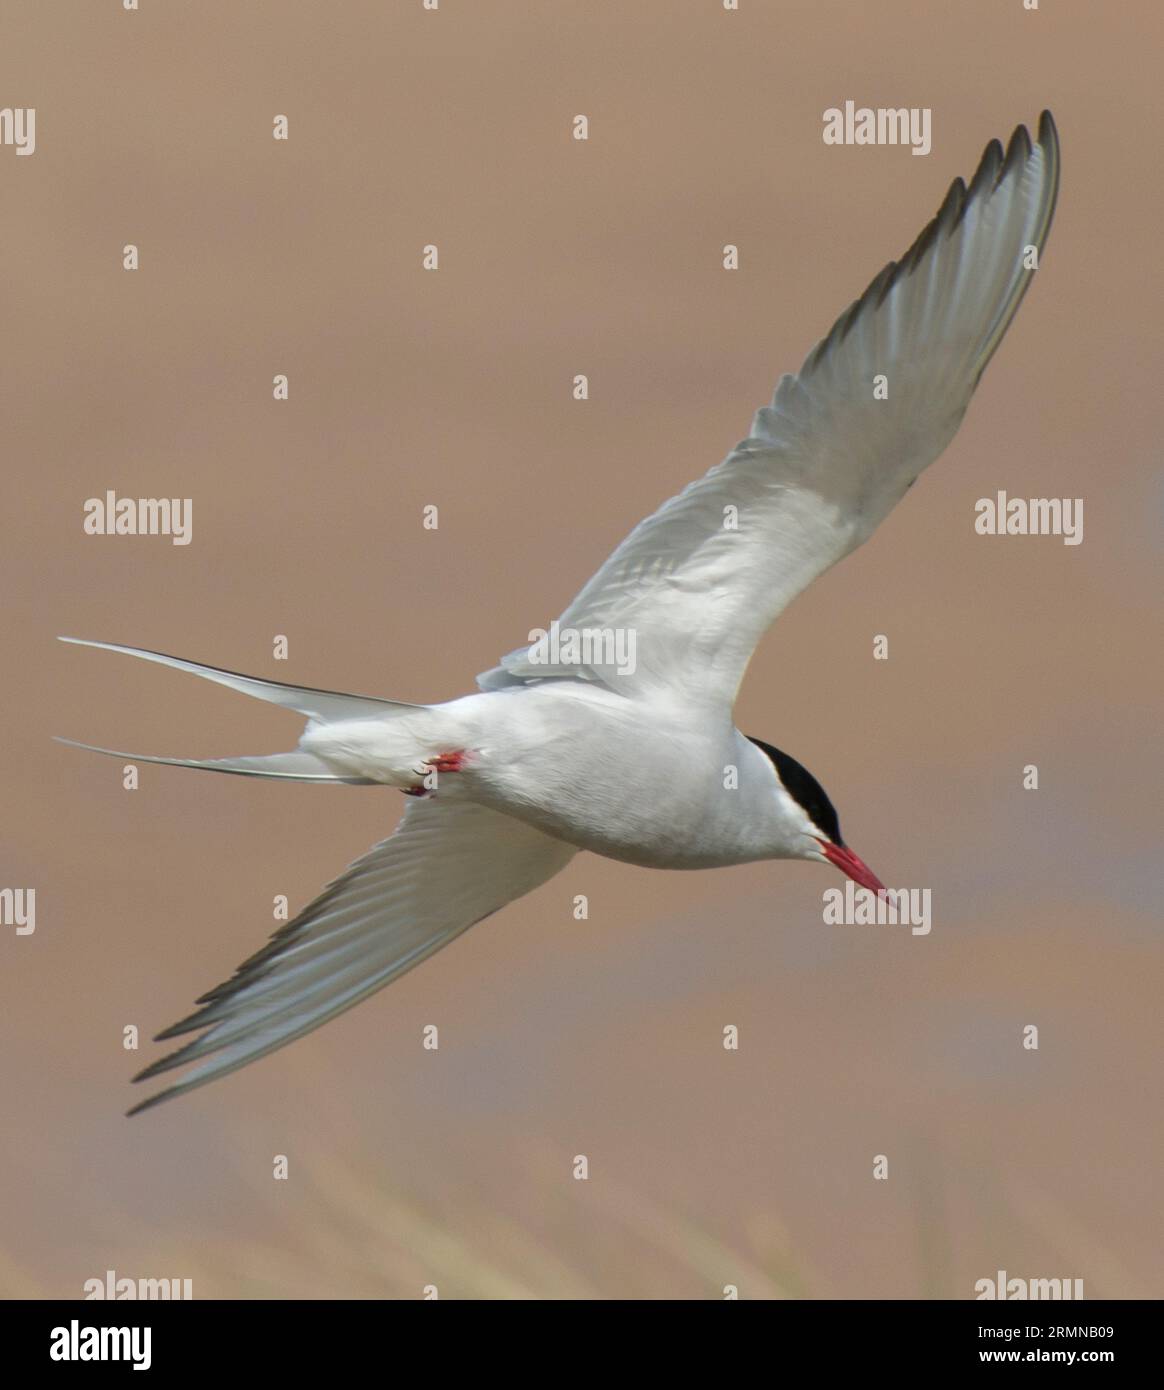 Immagine a colori ravvicinata di Tern artico che vola direttamente sopra la testa con le ali tese Foto Stock